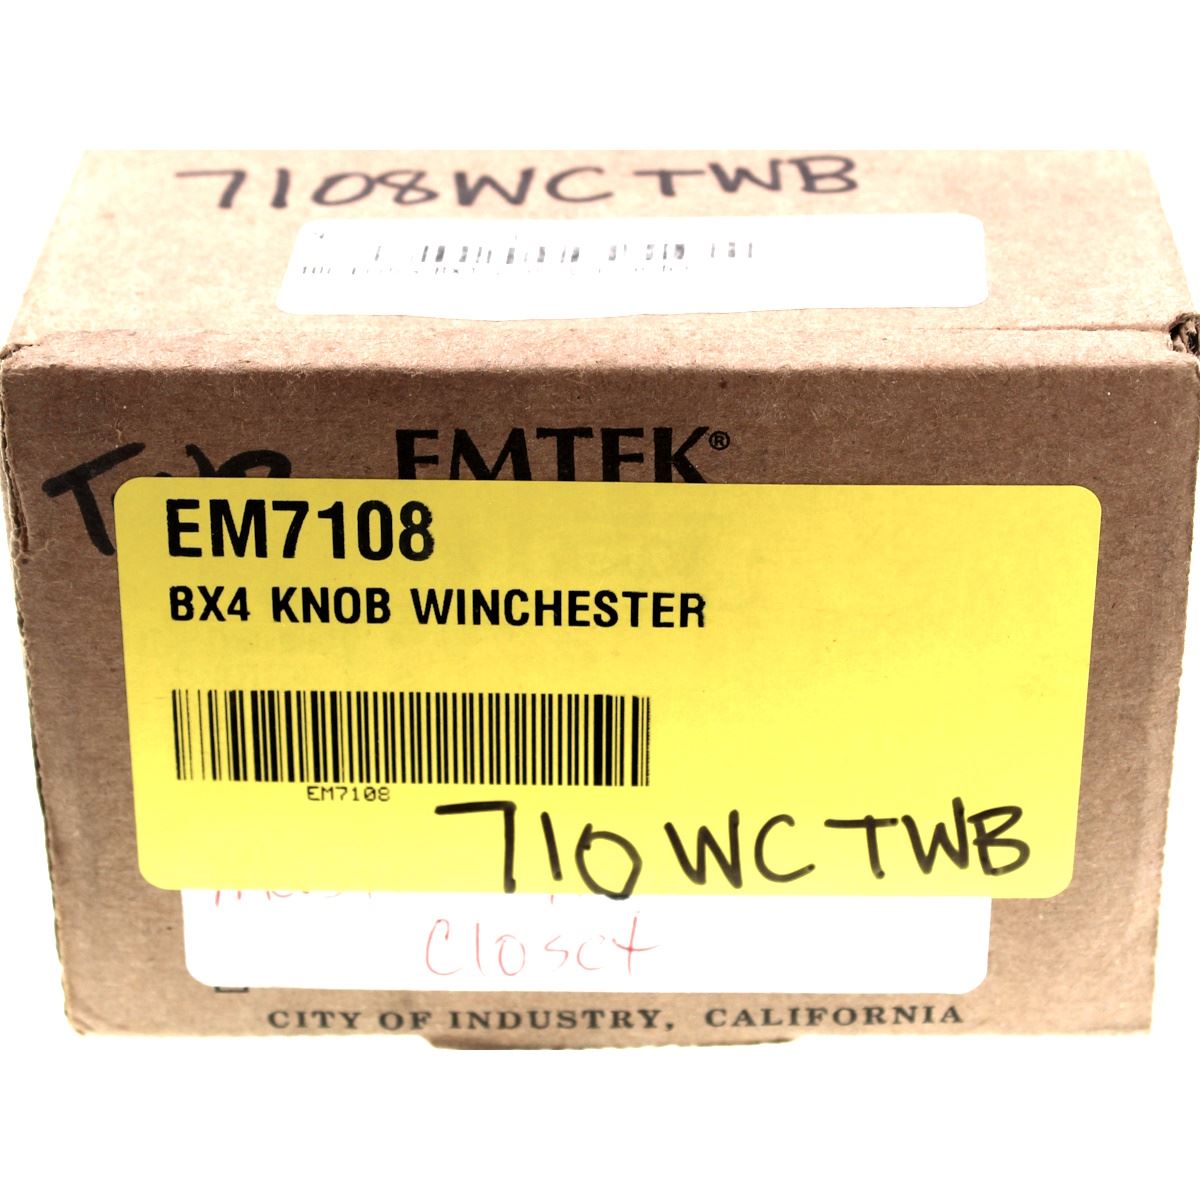 Emtek Winchester Passage Door Knob Sandcast Bronze Reversible 710WCTWB